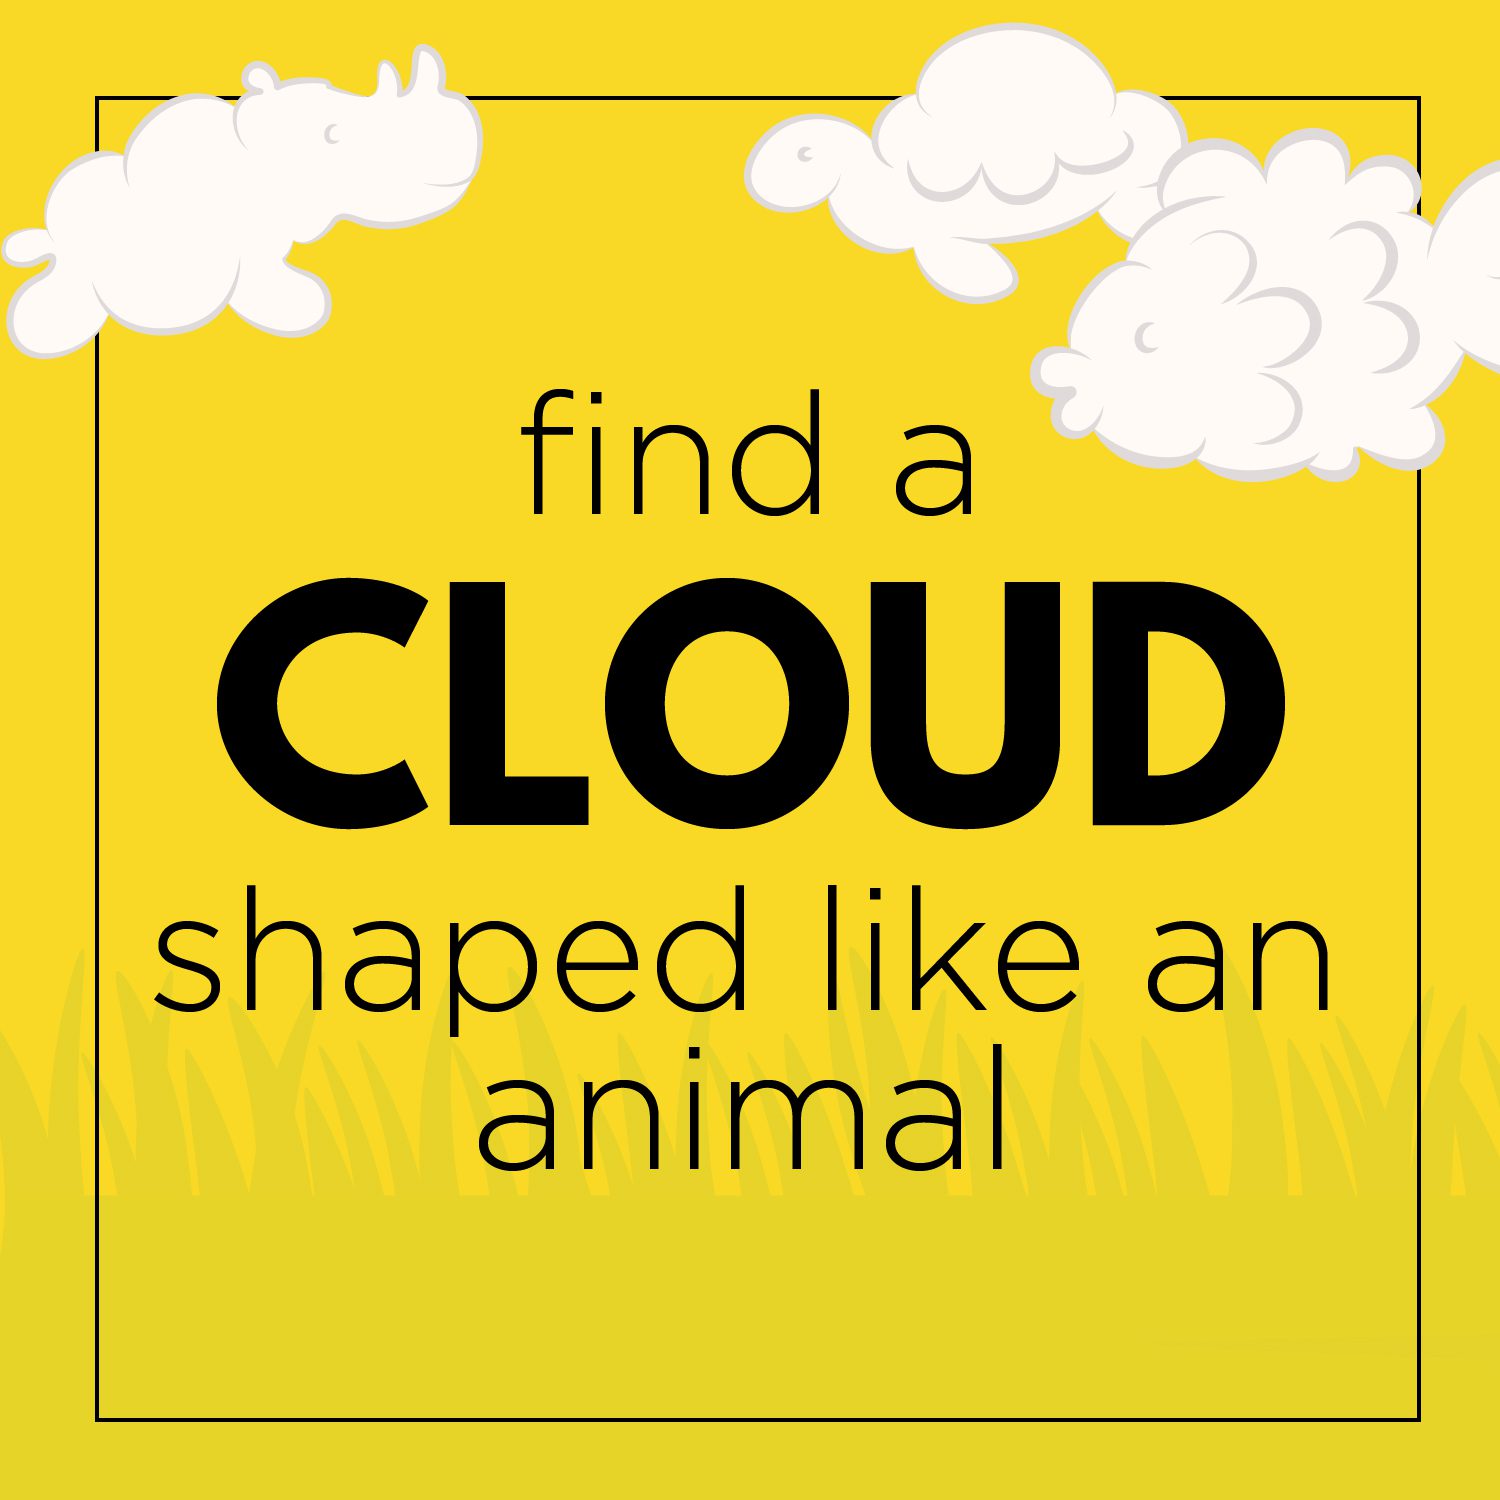 Find a cloud shaped like an animal